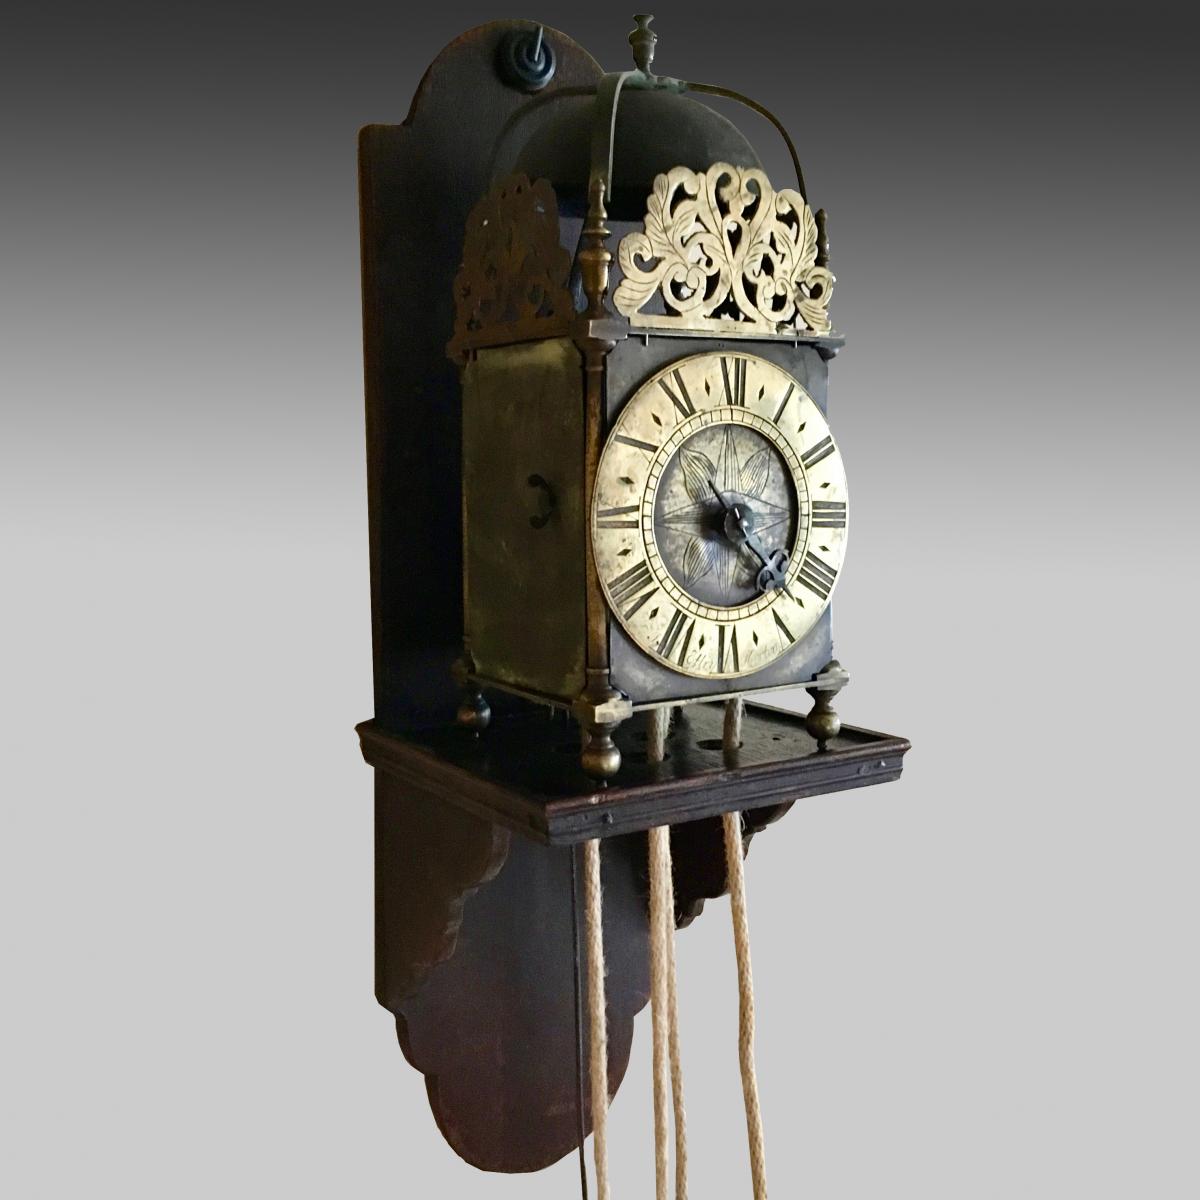 18th century brass lantern clock